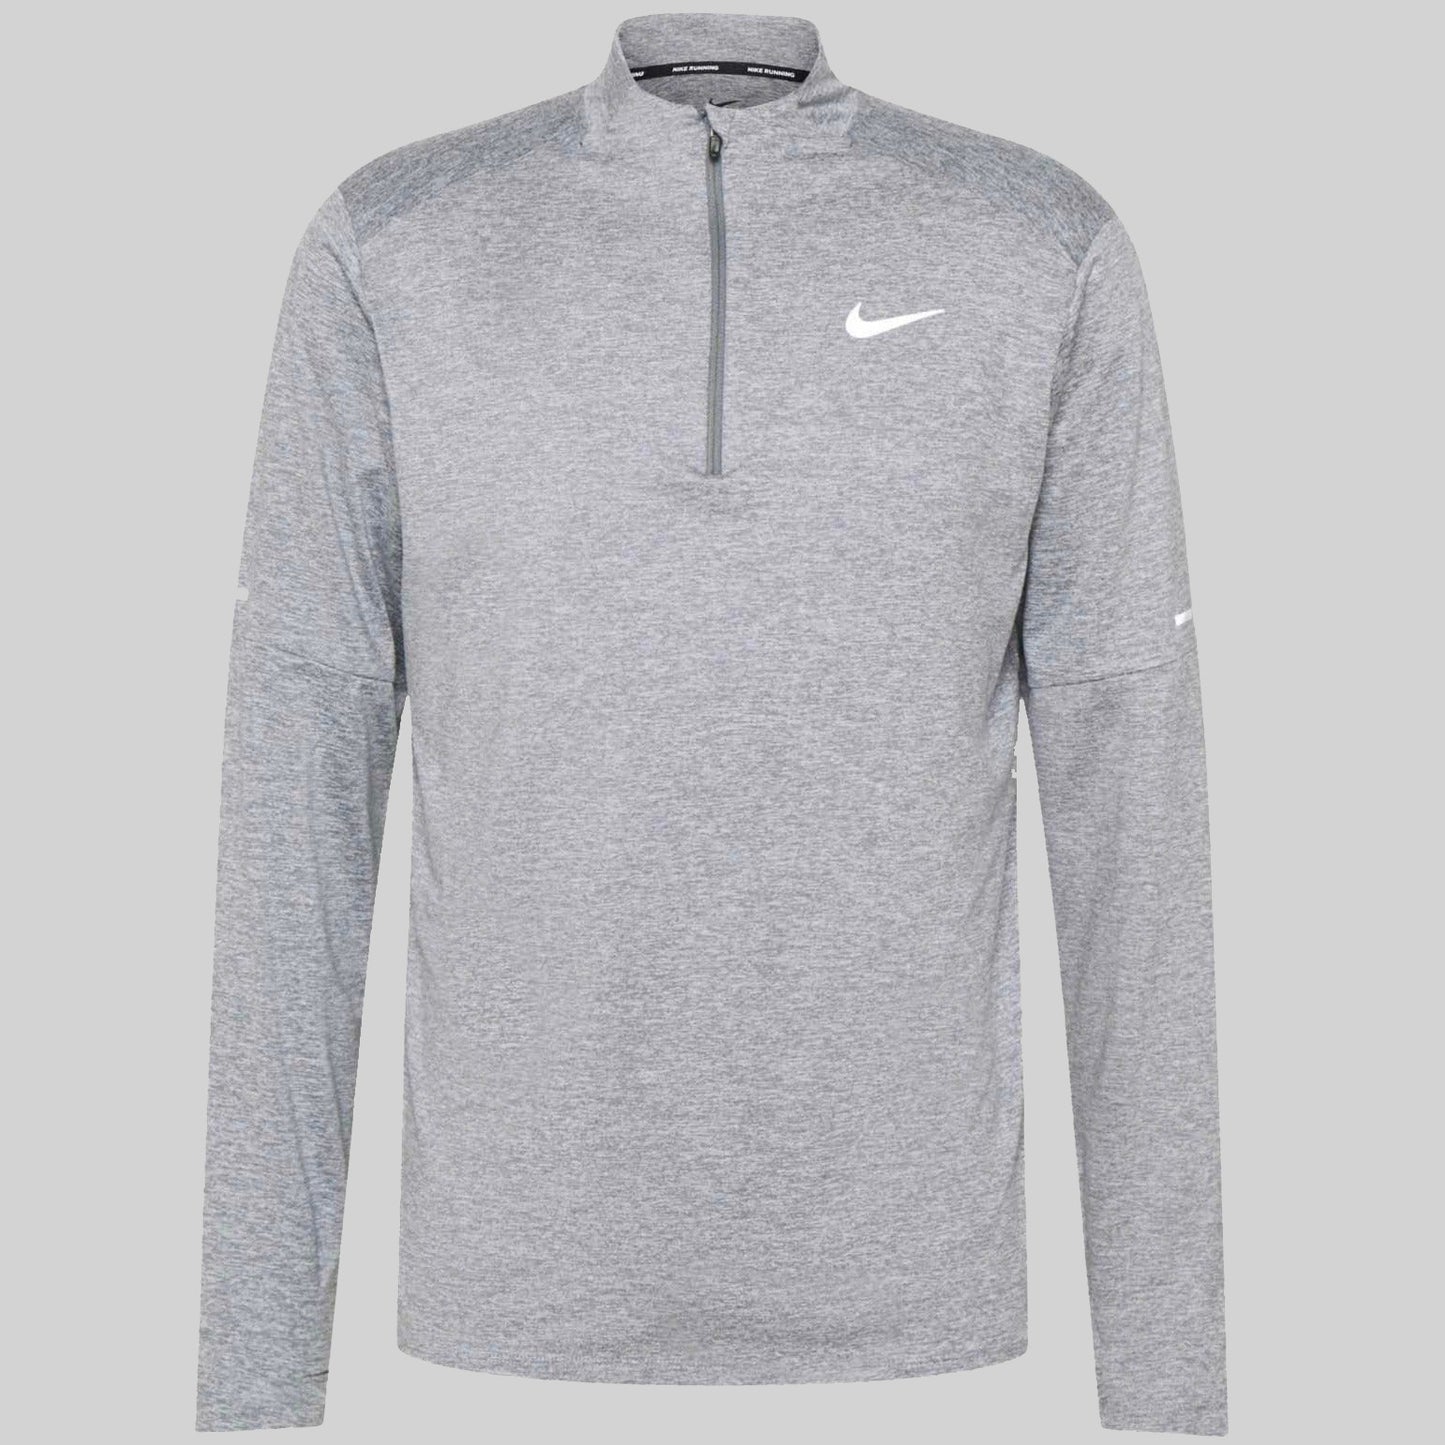 Nike Element Grey Half Zip